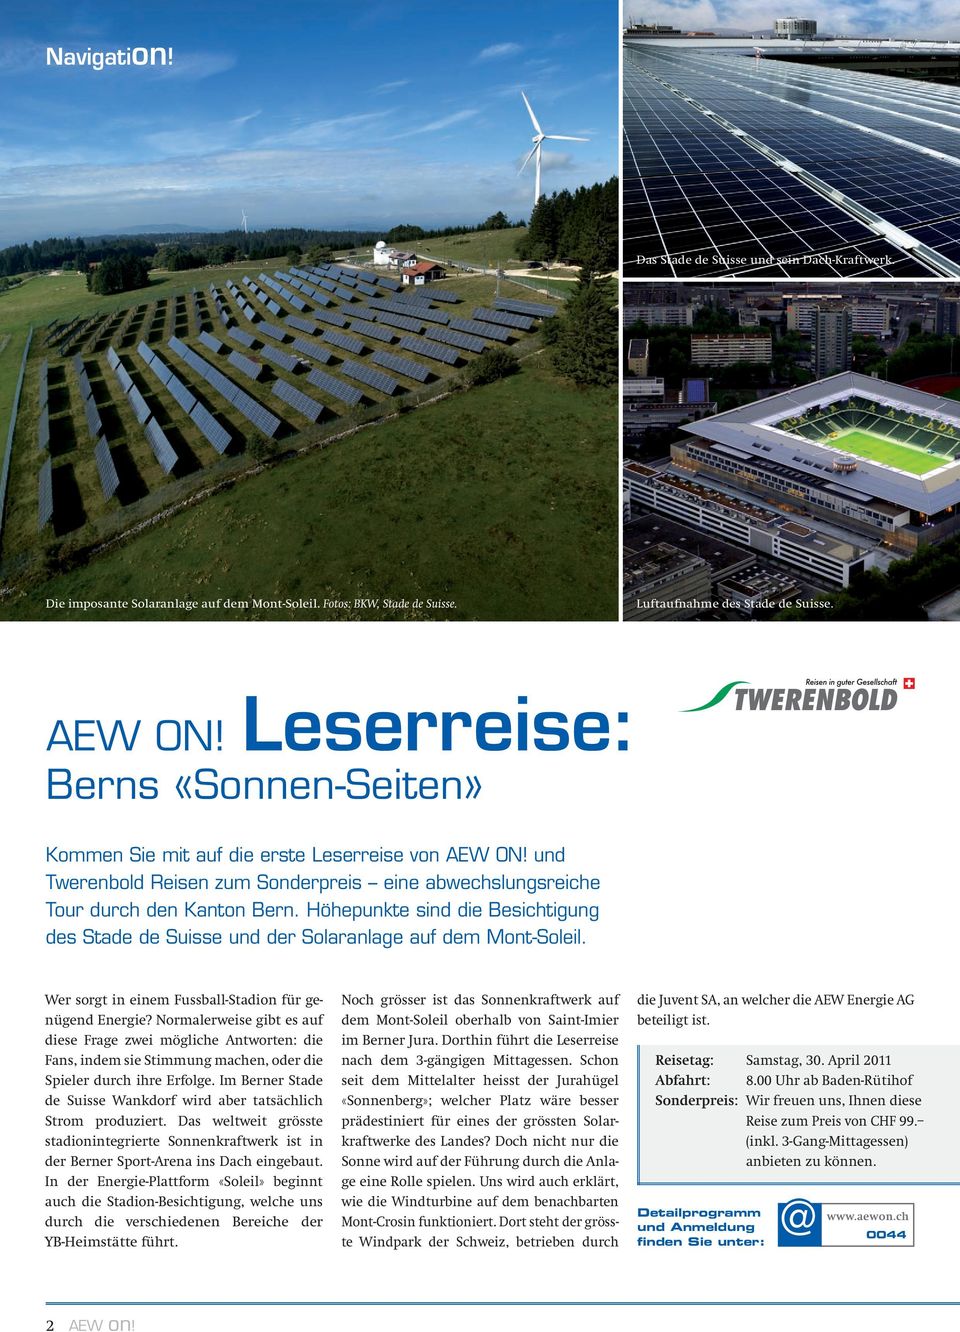 Höhepunkte sind die Besichtigung des Stade de Suisse und der Solaranlage auf dem Mont-Soleil. Wer sorgt in einem Fussball-Stadion für genügend Energie?